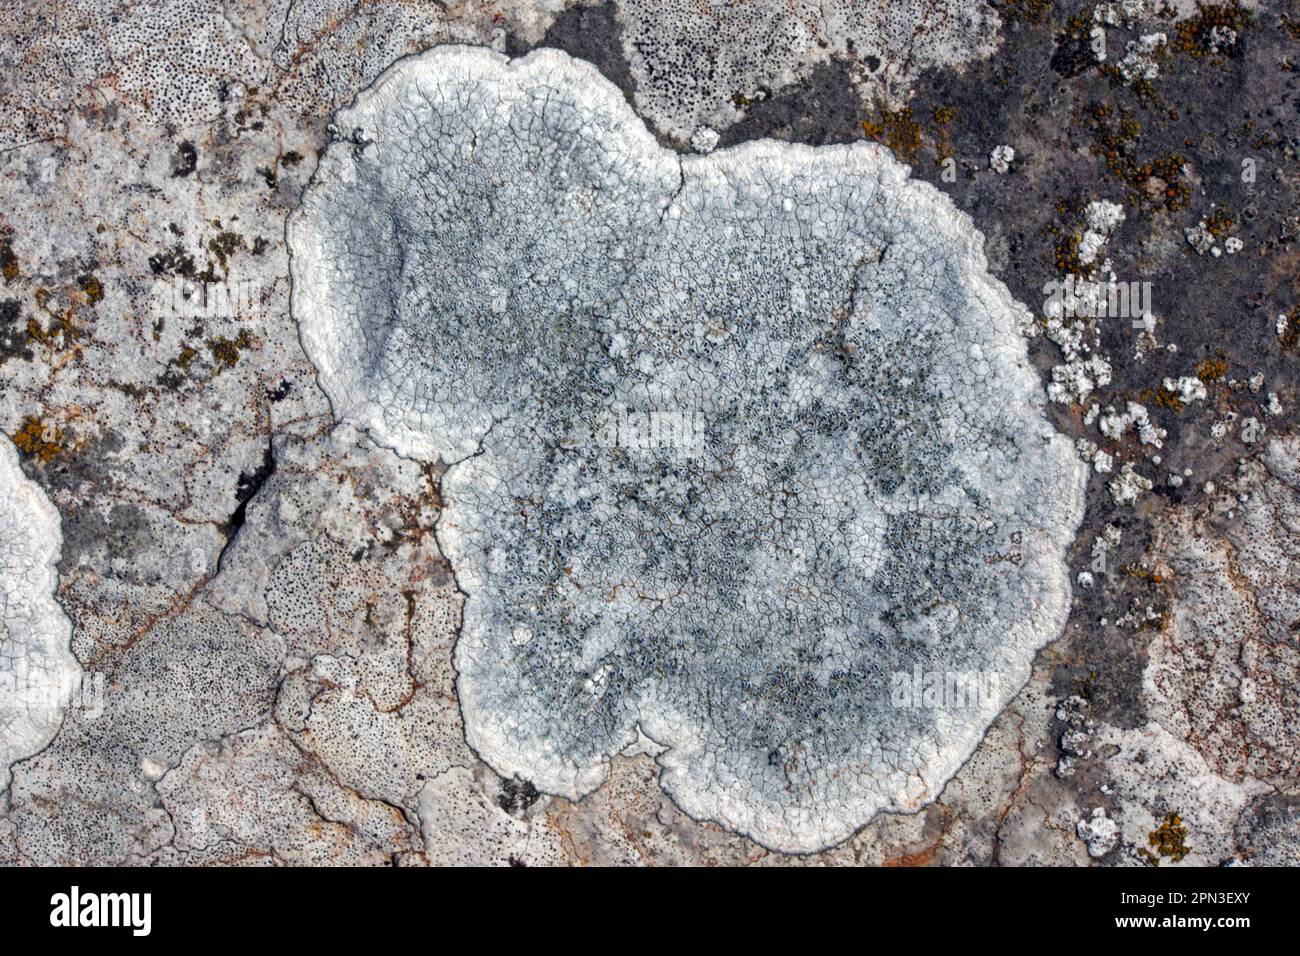 Aspicilia calcarea is a common crustose lichen found on limestone including gravestones. It has a global distribution. Stock Photo